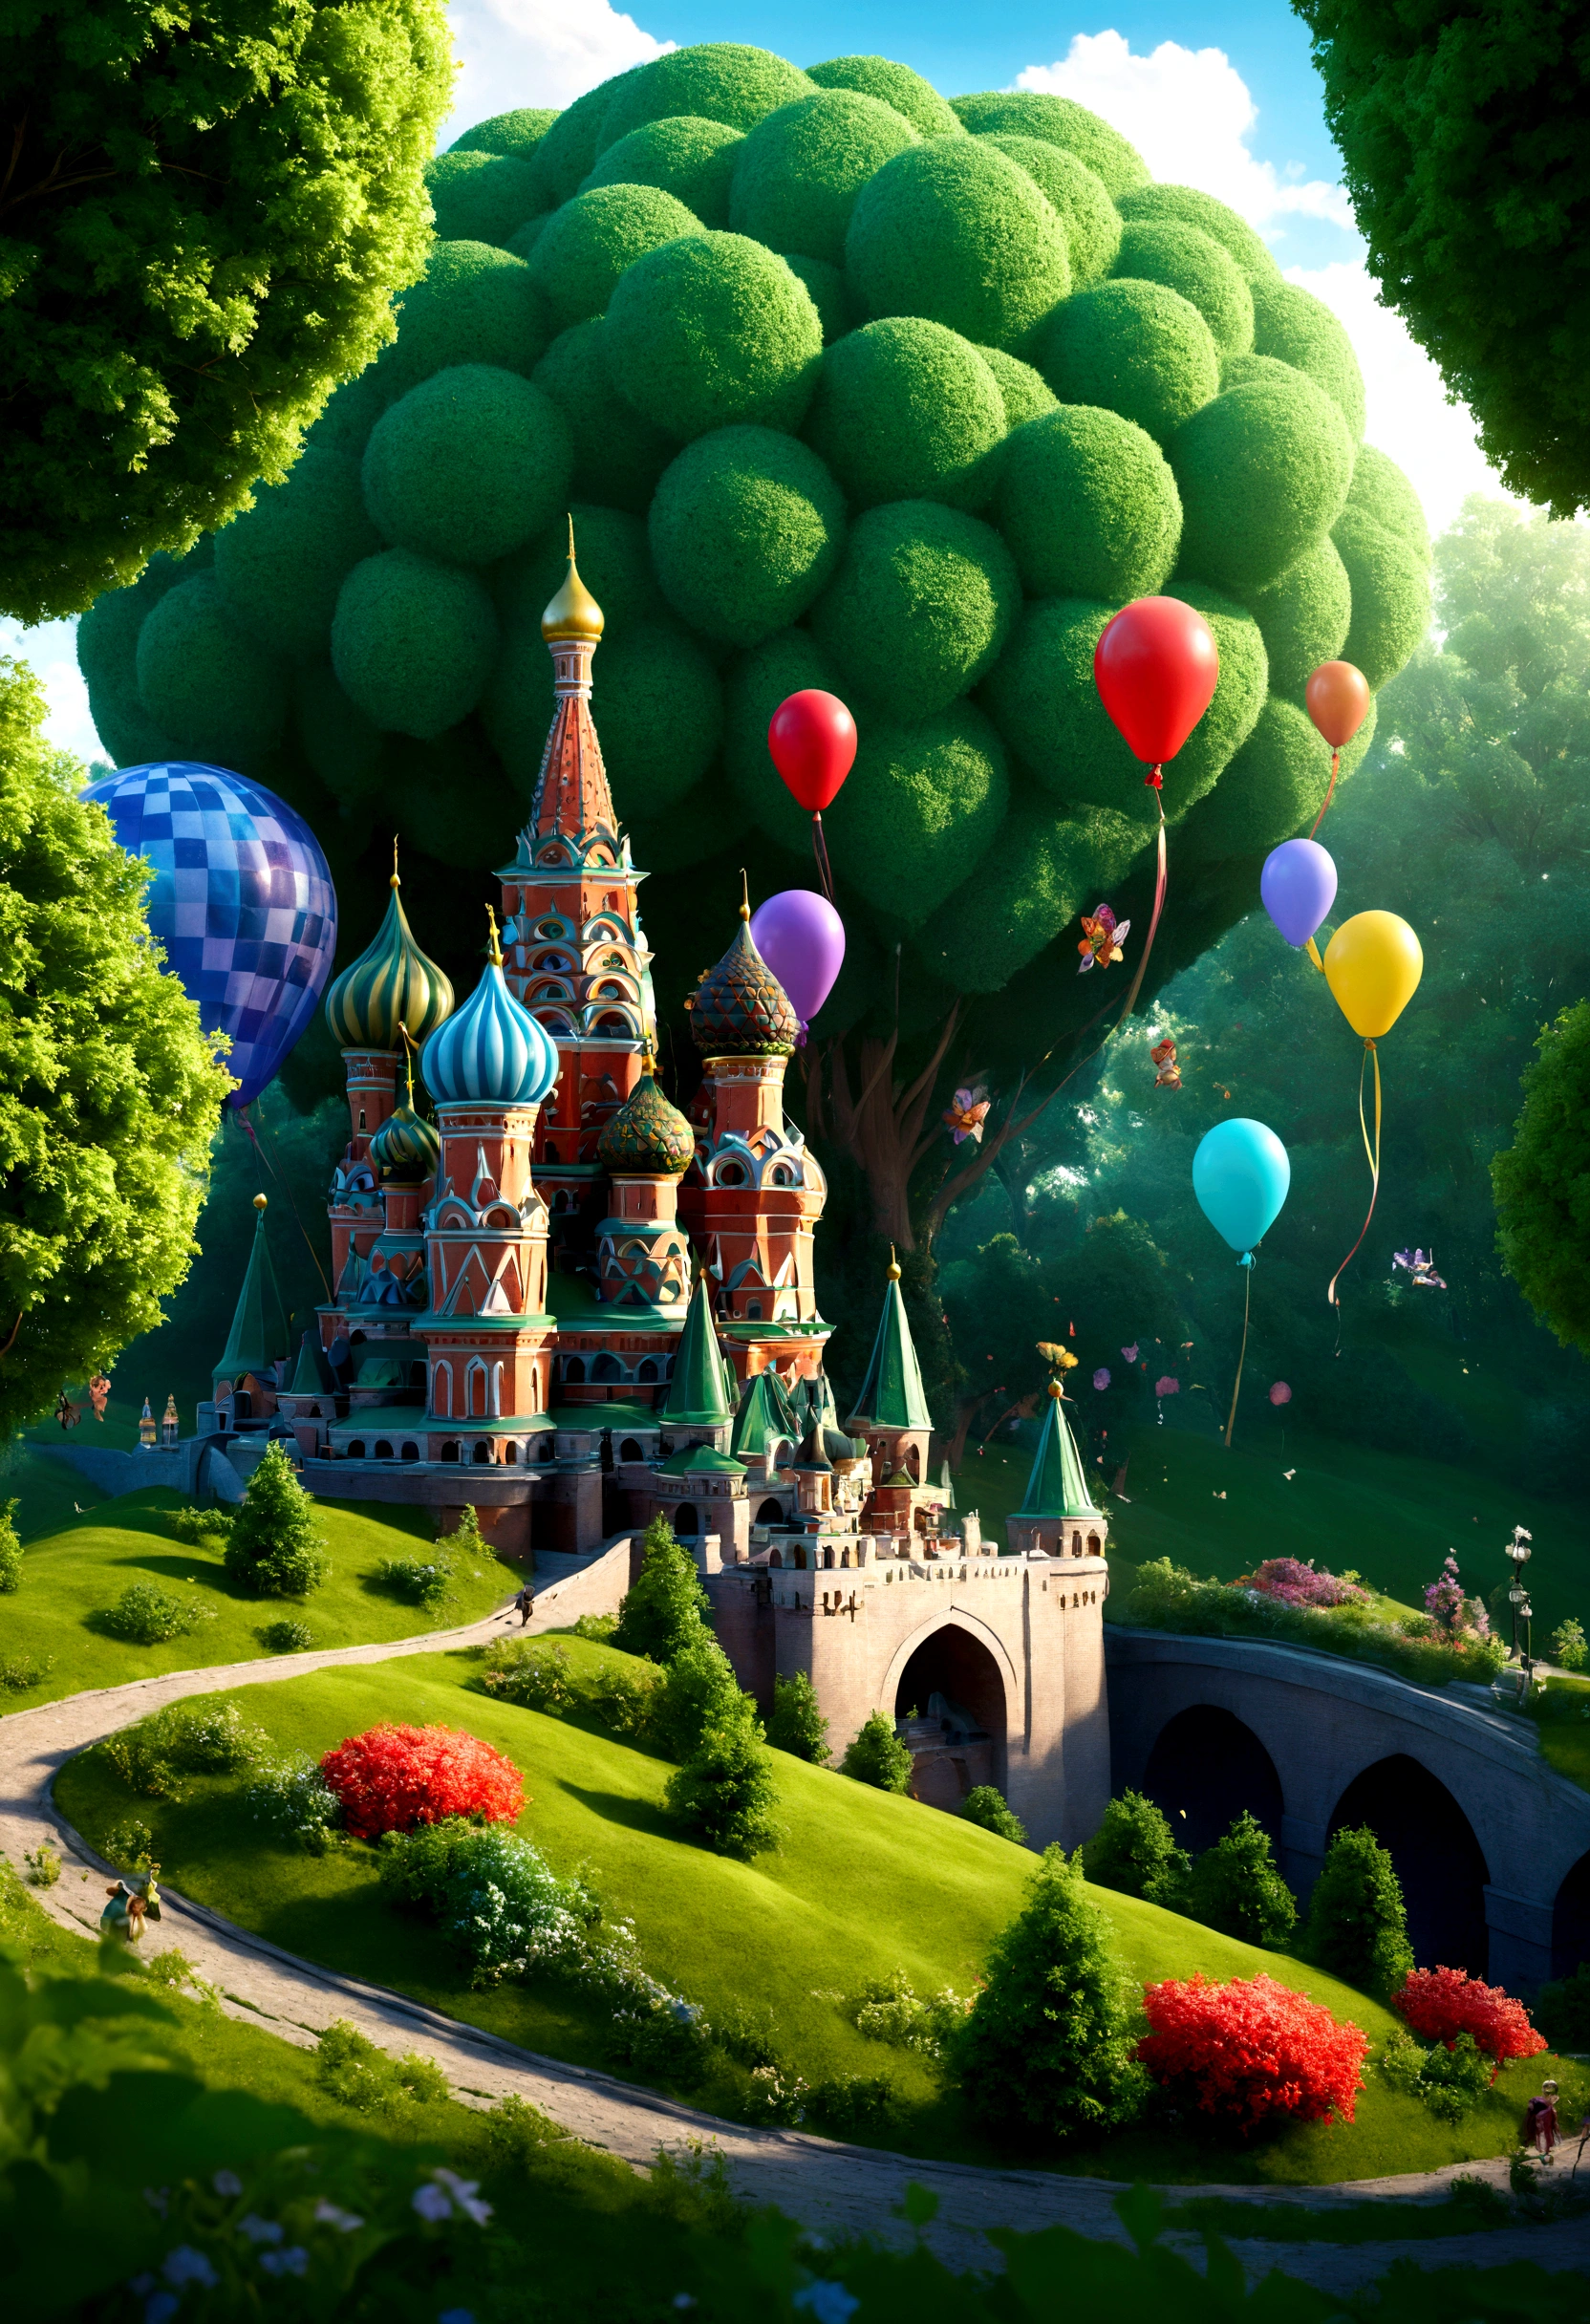 ภาพสามมิติที่น่าทึ่ง, ความชัดลึก f0.95, a small fairy-tale world imitating fairy-tale Moscow among ขลัง green fairy-tale trees and bright ขลัง flowers, โลกแห่งเทพนิยายดูเหมือนมอสโคว์เล็กๆ ที่มีรายละเอียดและโลกแห่งเทพนิยาย, บอลลูนสีสันสดใสลอยขึ้นไปในเทพนิยายเล็ก ๆ ในกรุงมอสโกแห่งนี้ และบรรยากาศแห่งการเฉลิมฉลองและการครองราชย์แห่งเวทมนตร์, เหมือนจริง, ขลัง, ในรายละเอียด